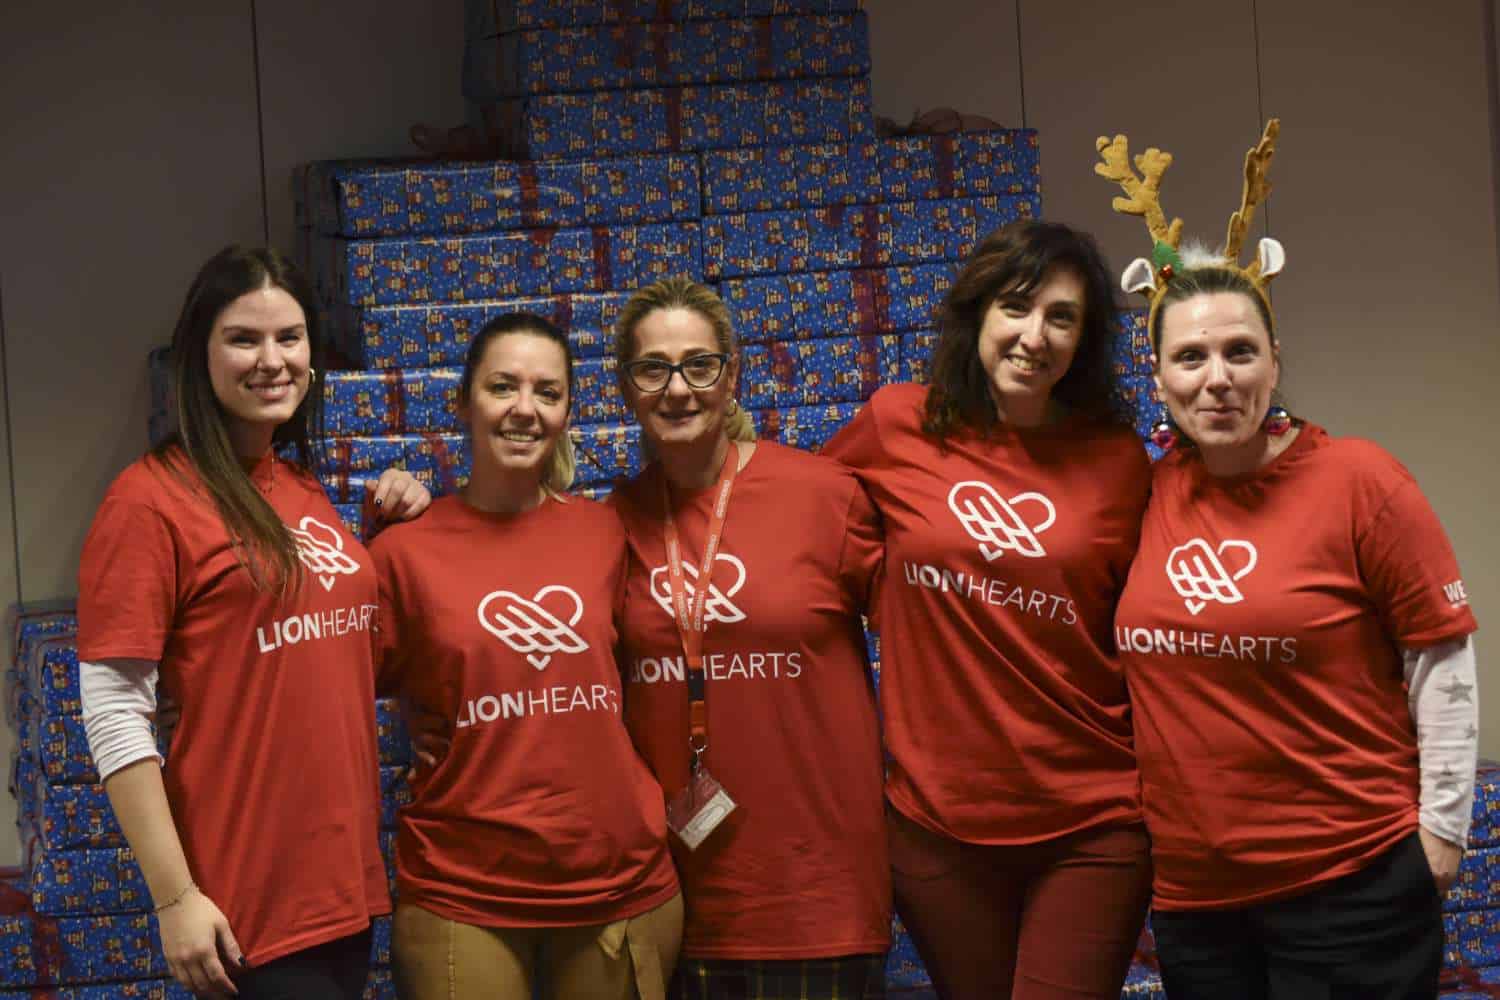 Οι Lion Hearts της Generali στηρίζουν παιδιά και οικογένειες που έχουν ανάγκη